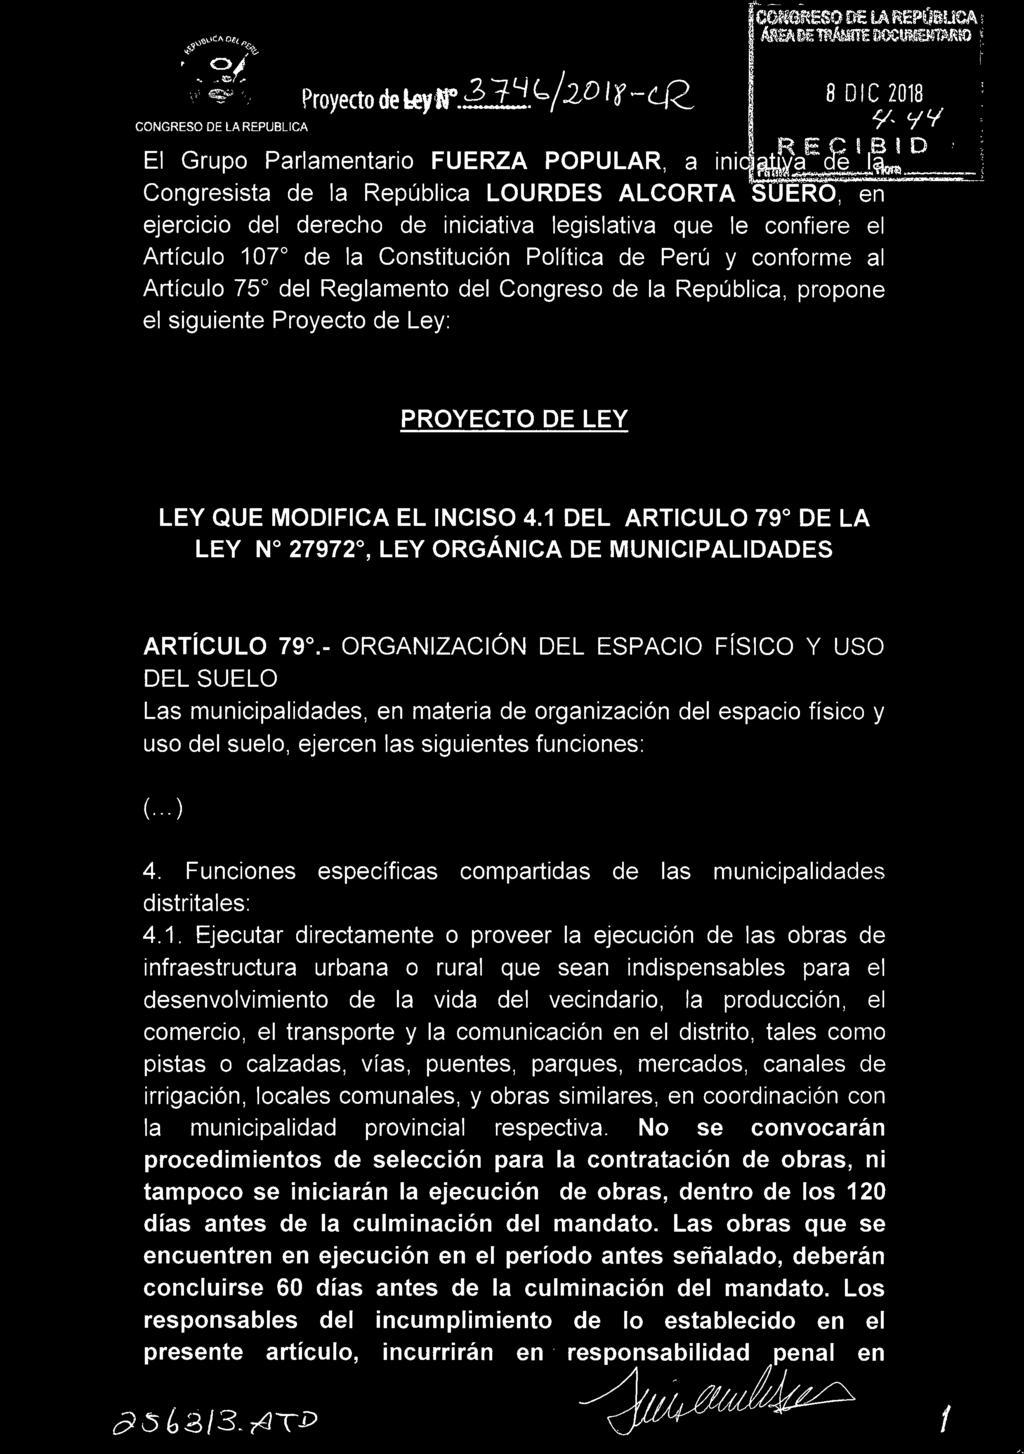 U 11t~:cq; e,,; 1w -» Congresista de la República LOURDES ALCORTA SUERO, en ejercicio del derecho de iniciativa legislativa que le confiere el Artículo 107º de la Constitución Política de Perú y